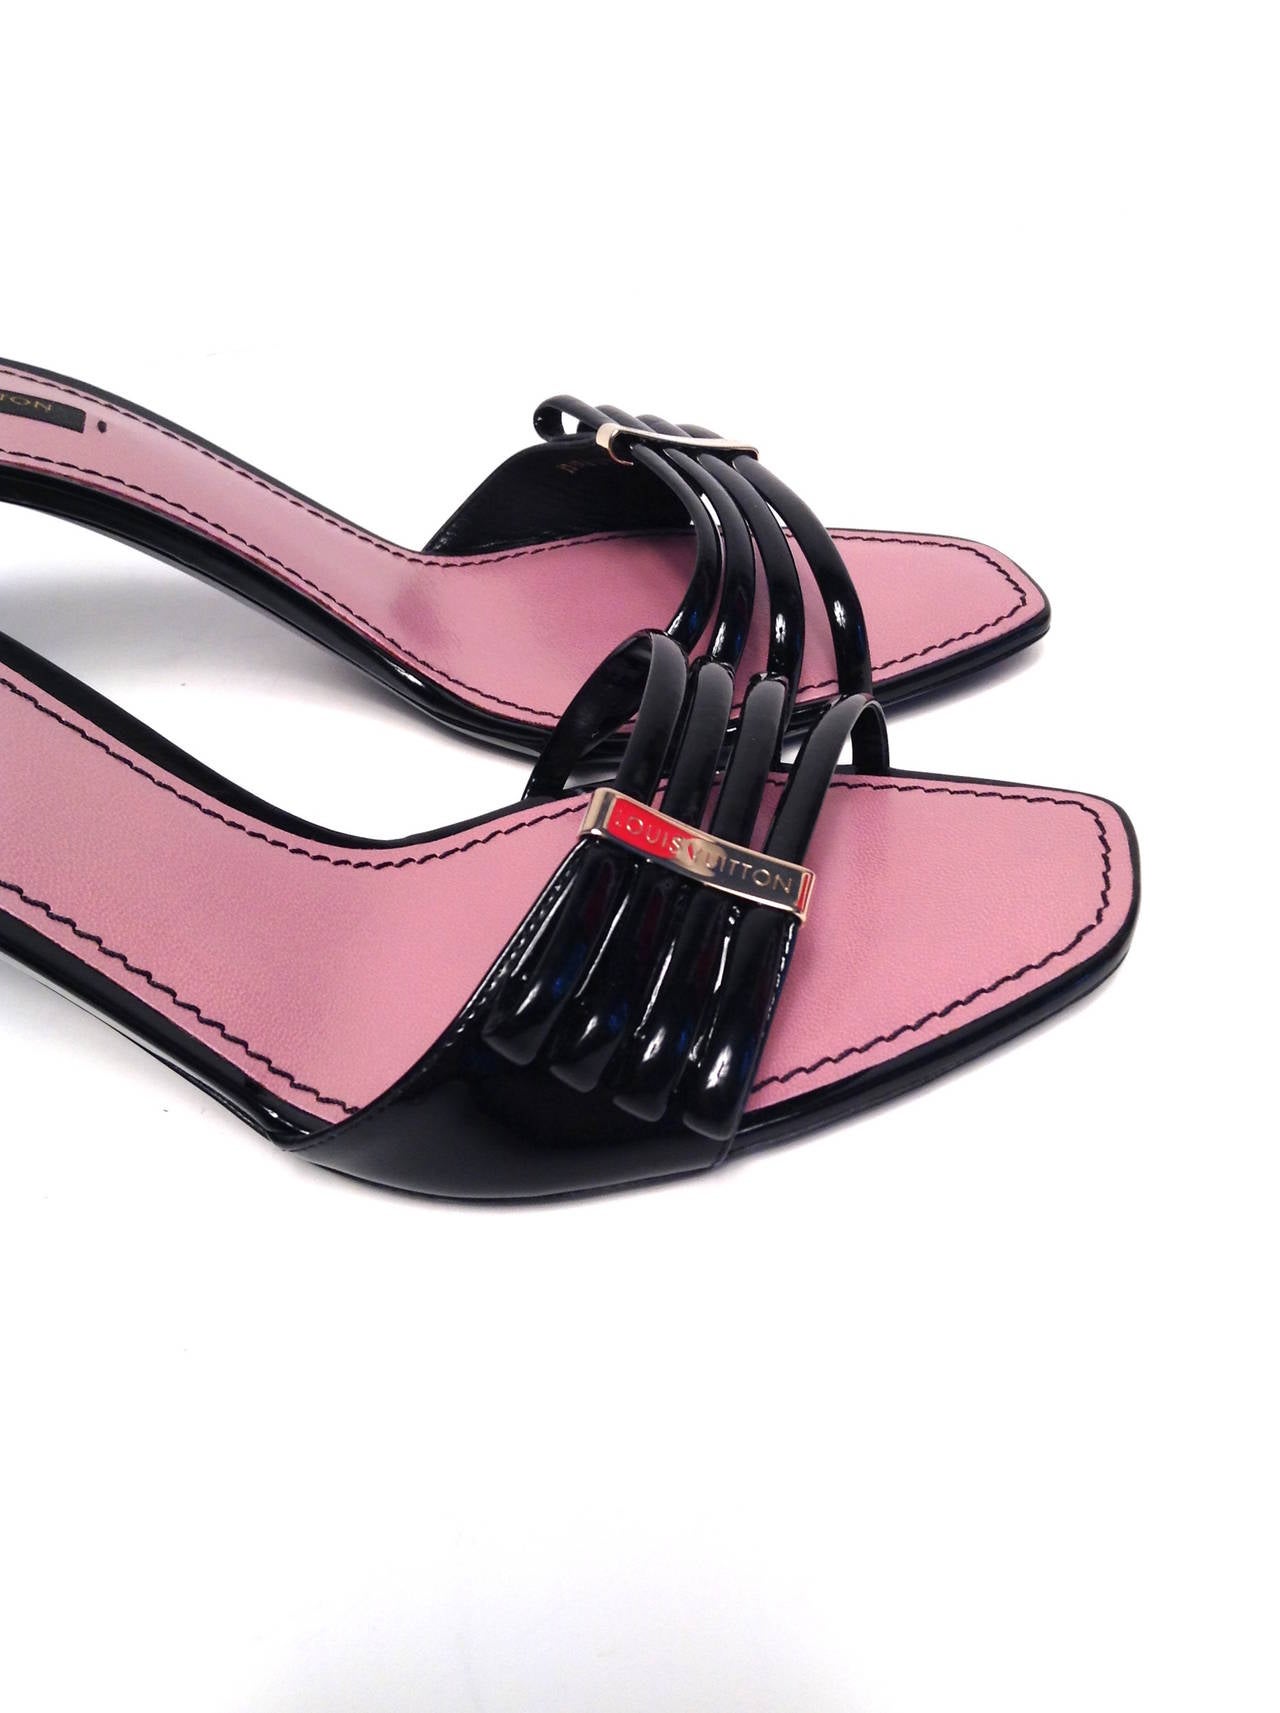 Louis Vuitton Black Patent Cherry Open Toe Mule Size 39/8 For Sale 4